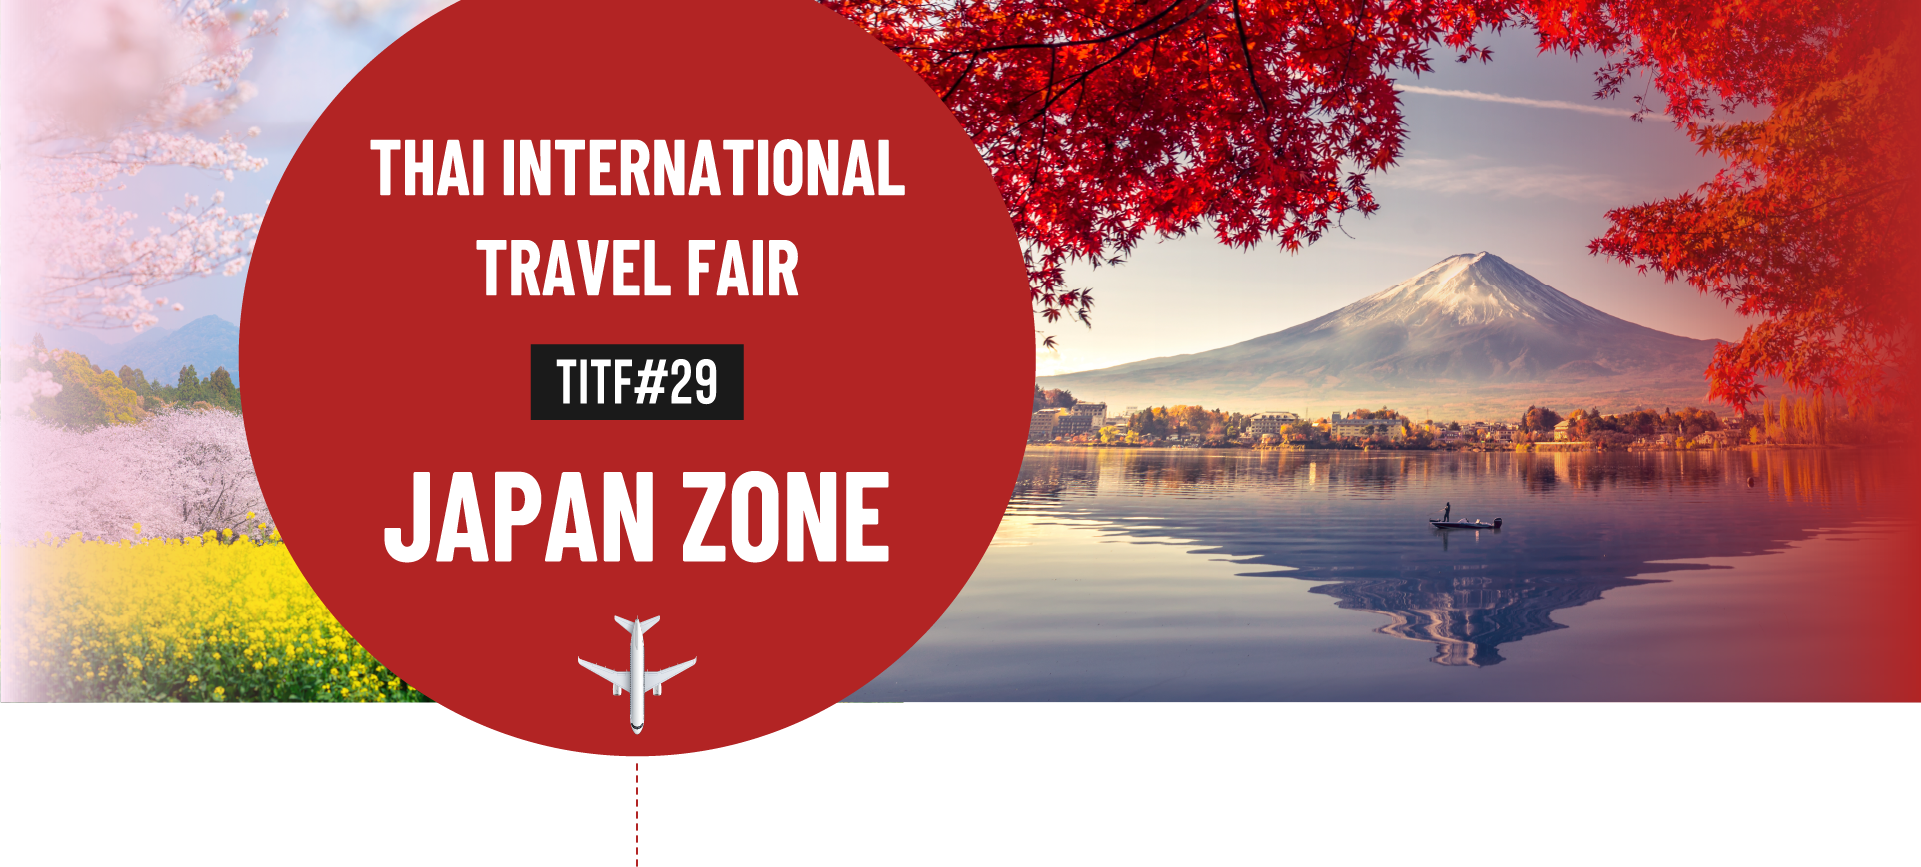 Thai International Travel Fair (TITF#29) Japan Zone